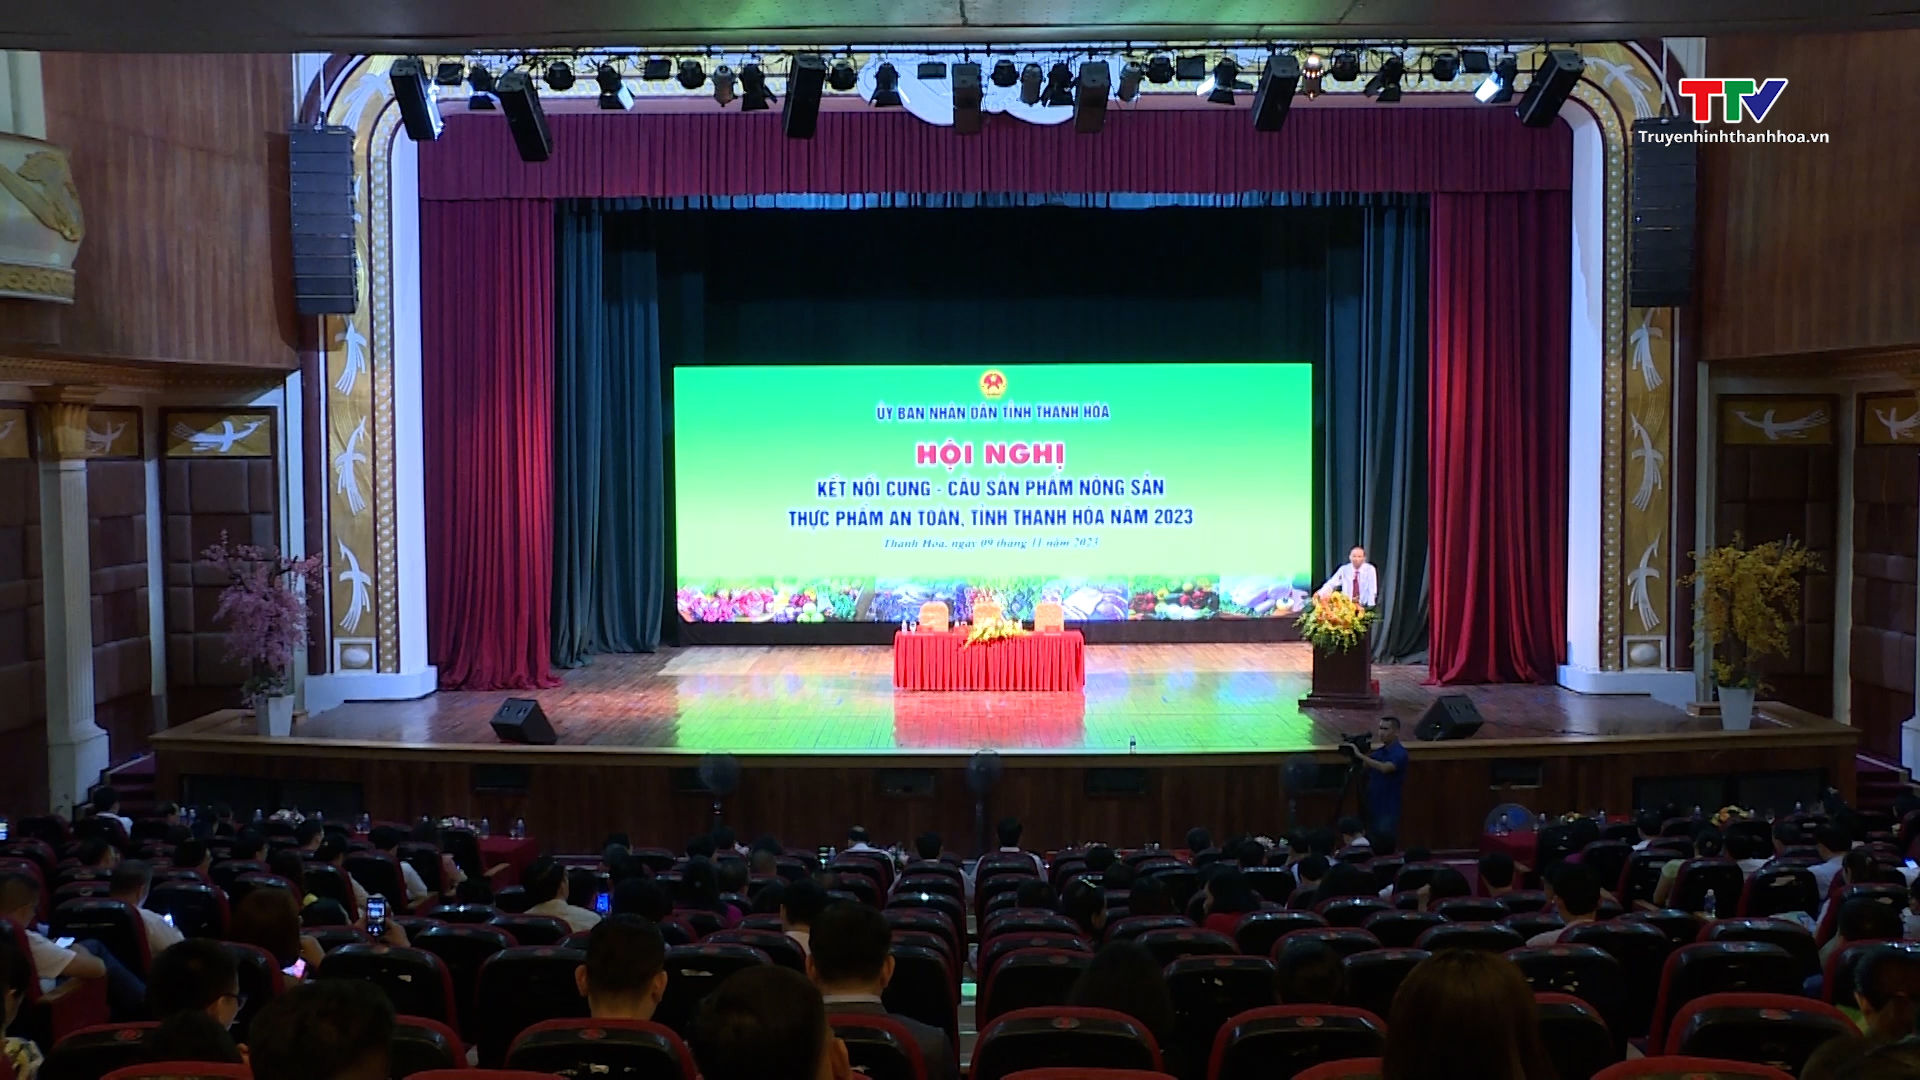 Hội nghị kết nối cung - cầu sản phẩm nông sản, thực phẩm an toàn tỉnh Thanh Hóa năm 2023 - Ảnh 2.